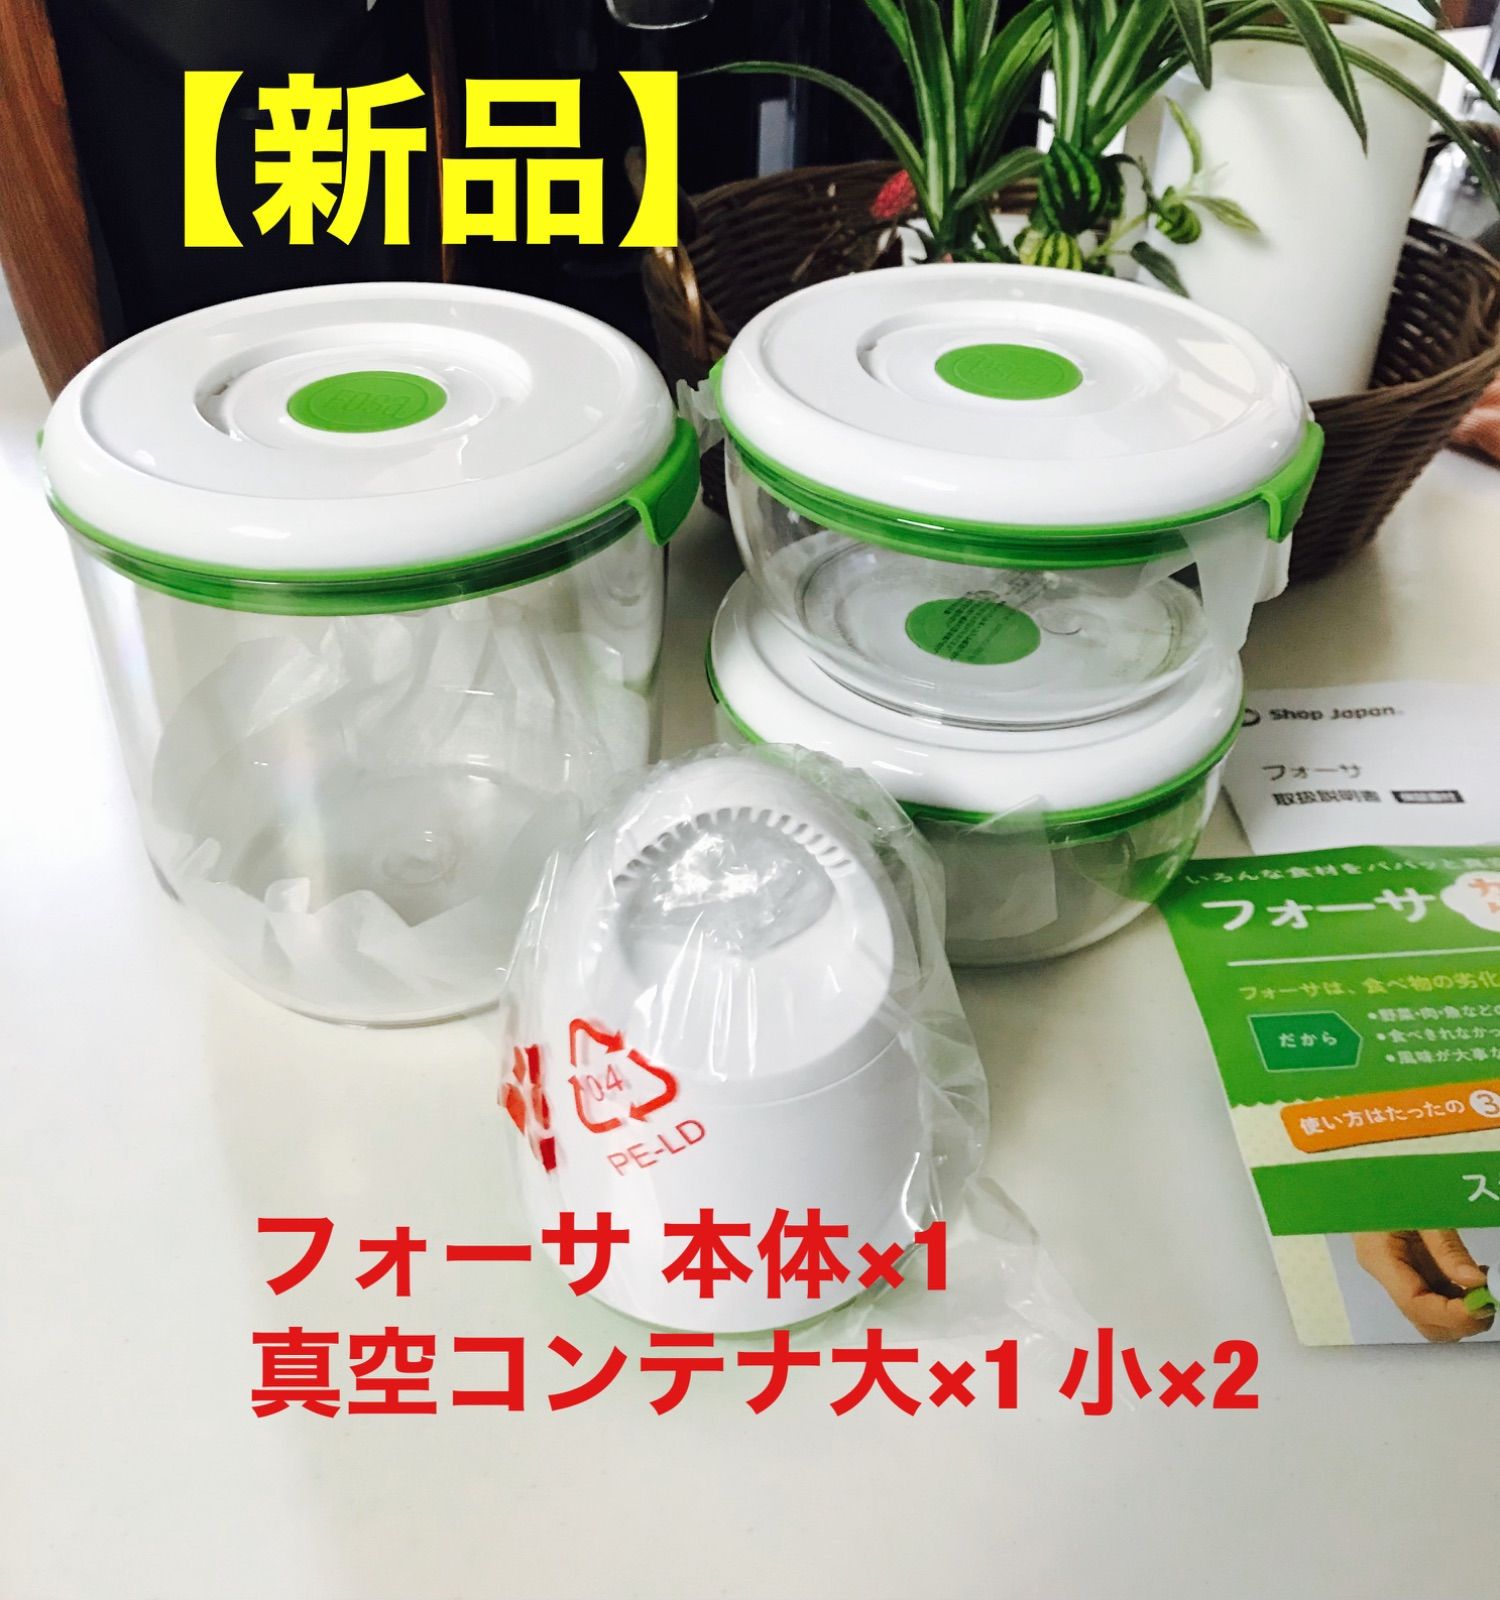 新品】ショップジャパン フォーサ 真空保存容器3点セット - CKstore